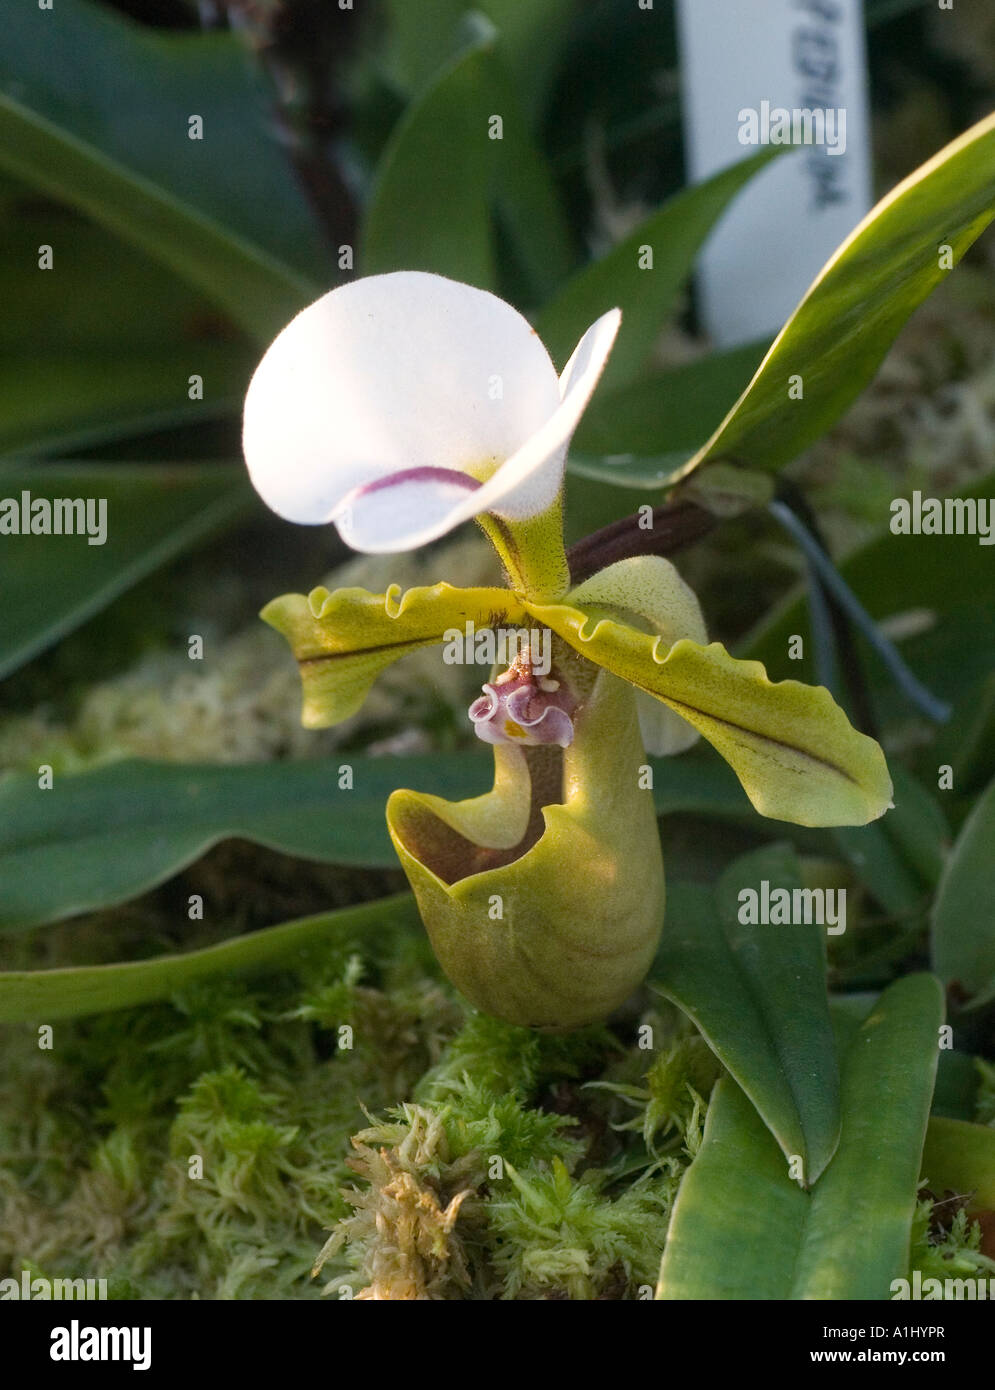 Paphiopedilum Spicerianum orchid from North India Stock Photo